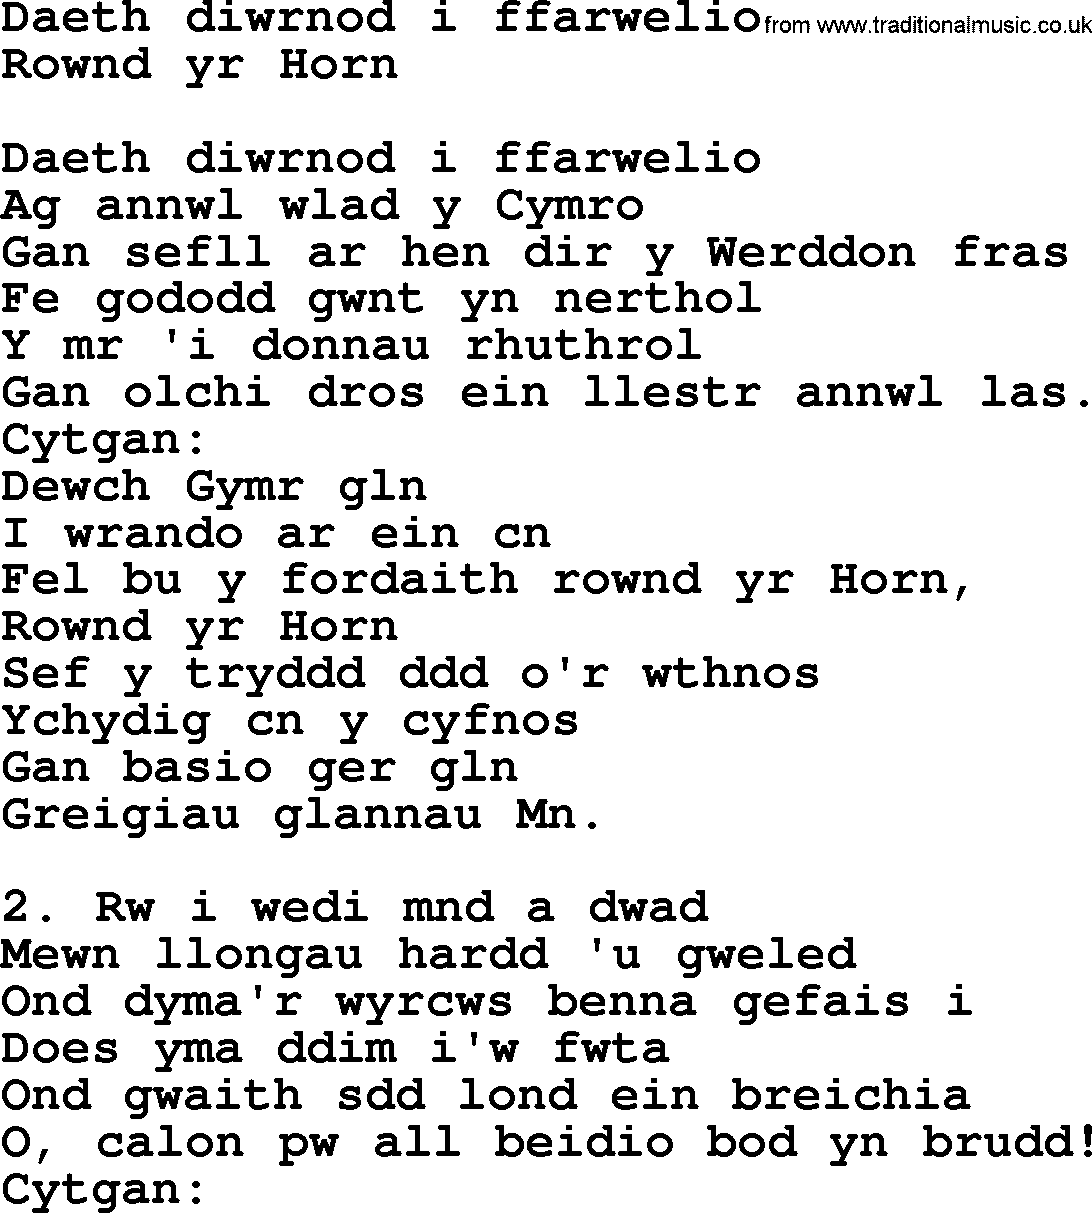 Sea Song or Shantie: Daeth Diwrnod I Ffarwelio, lyrics